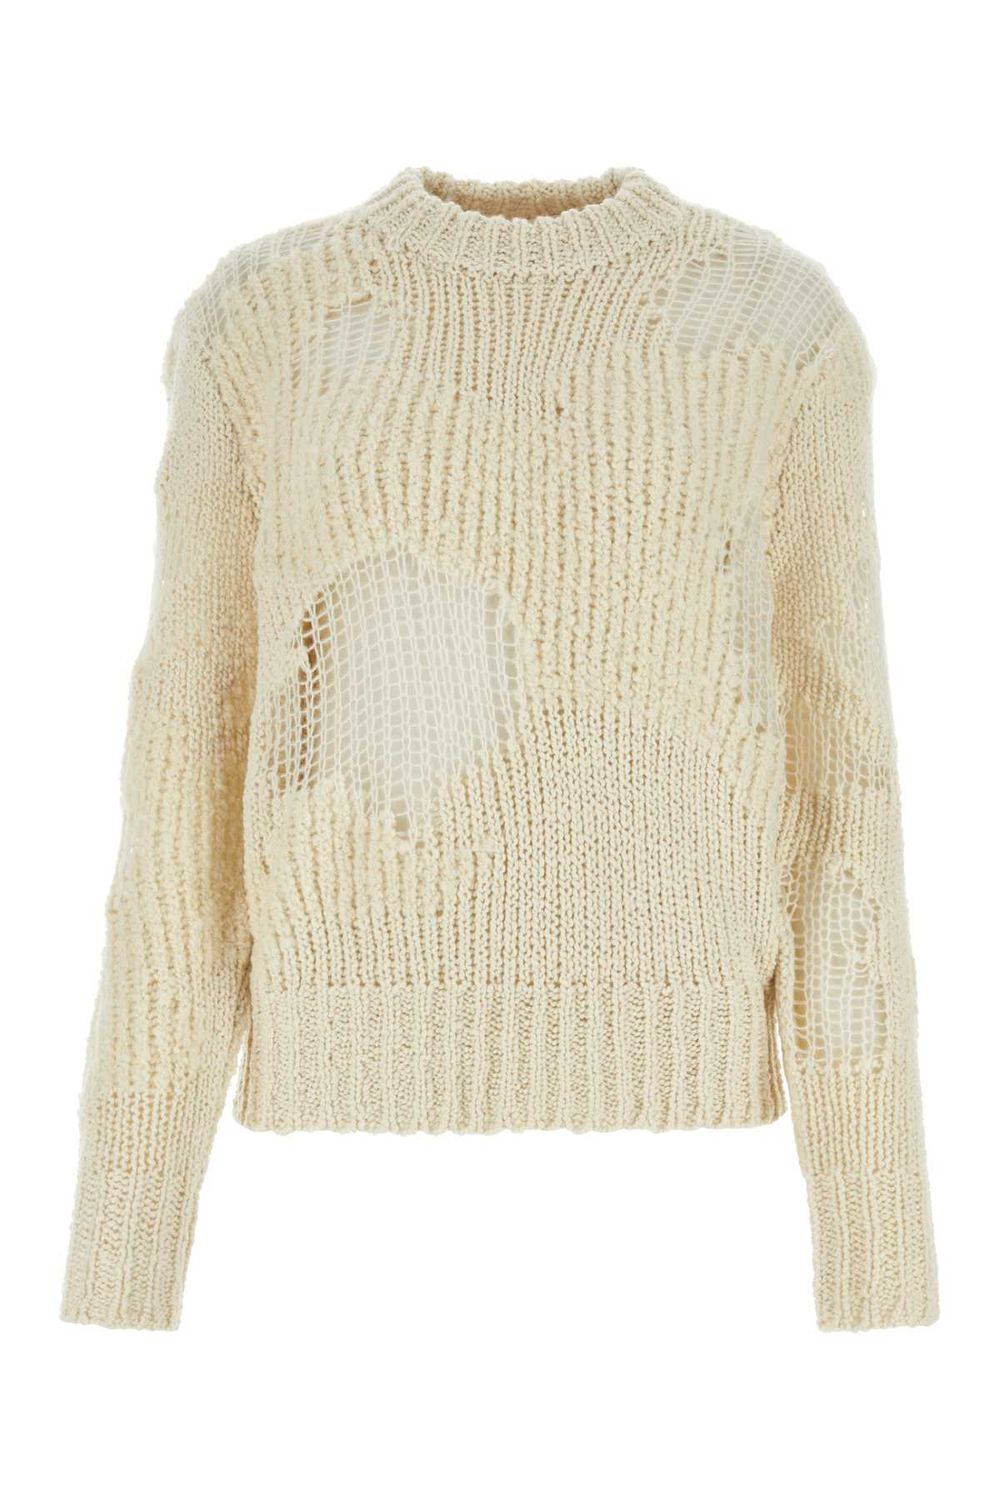 Shop Chloé Luxurious Wool Knit Sweater In Nude & Neutrals For Women In Beige